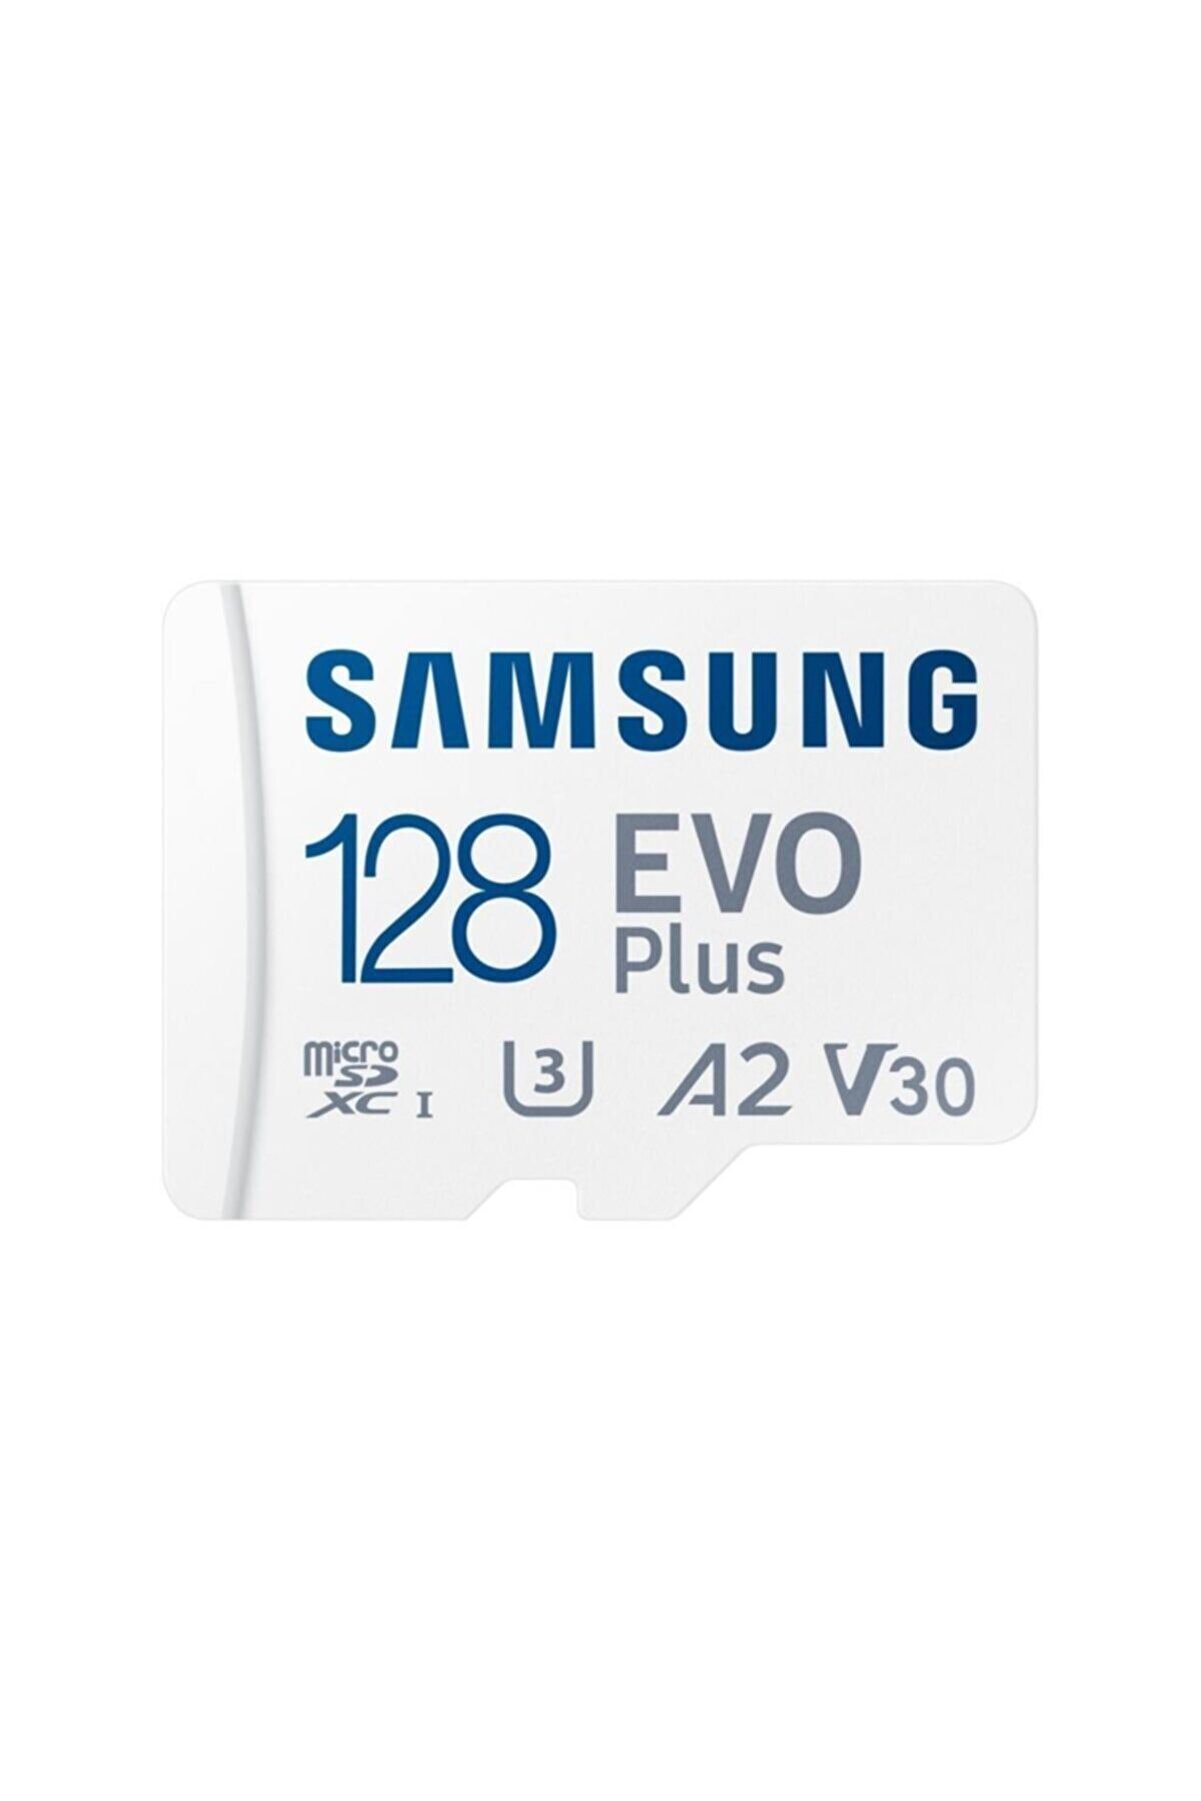 Samsung Evo Plus 128gb Microsd Hafıza Kartı Mb-mc128ka/tr - 130 Mb/sn